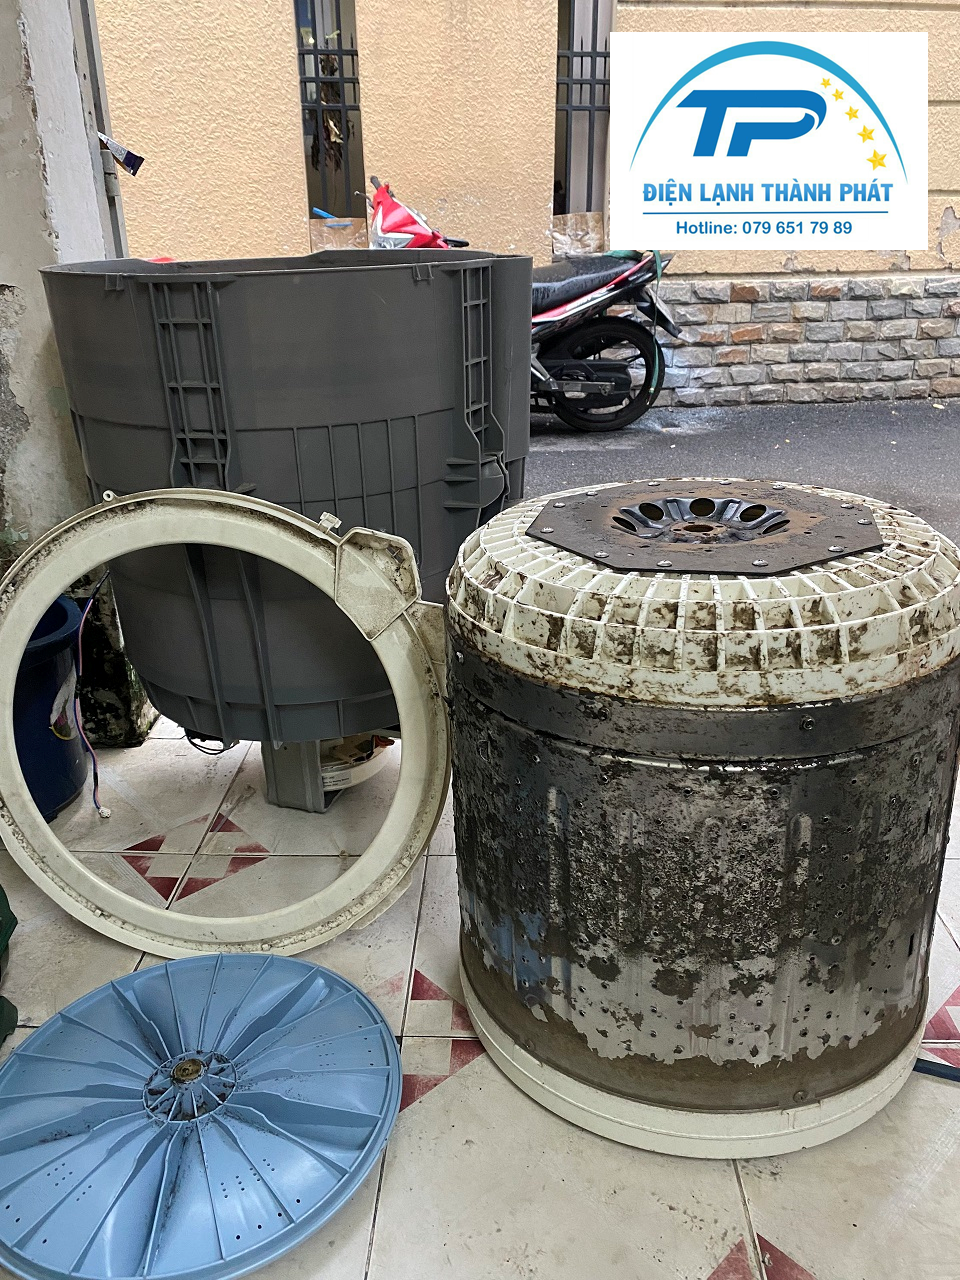 Dịch vụ vệ sinh máy giặt Quận Tân Phú Điện lạnh Thành Phát luôn có mặt nhanh chóng.